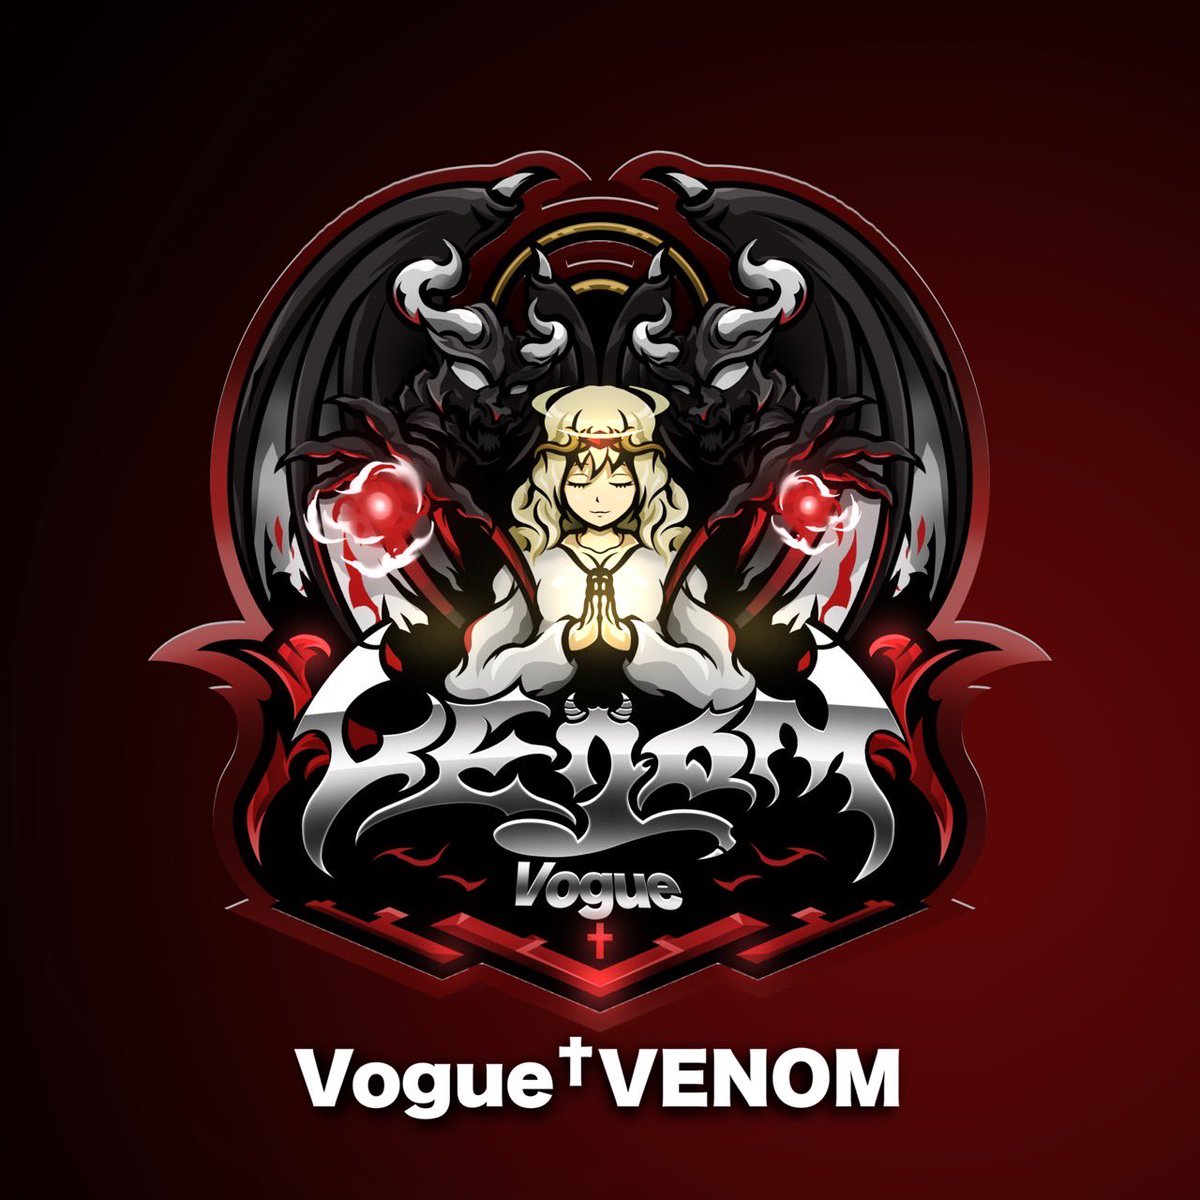 【ご報告】
Vogue†VENOMにスポンサーとして
しばいぬ @x_SBIN_x  が加入致しました。

更なるVogueの飛躍へ尽力してもらいます！！
これからよろしくお願いします🙏✨